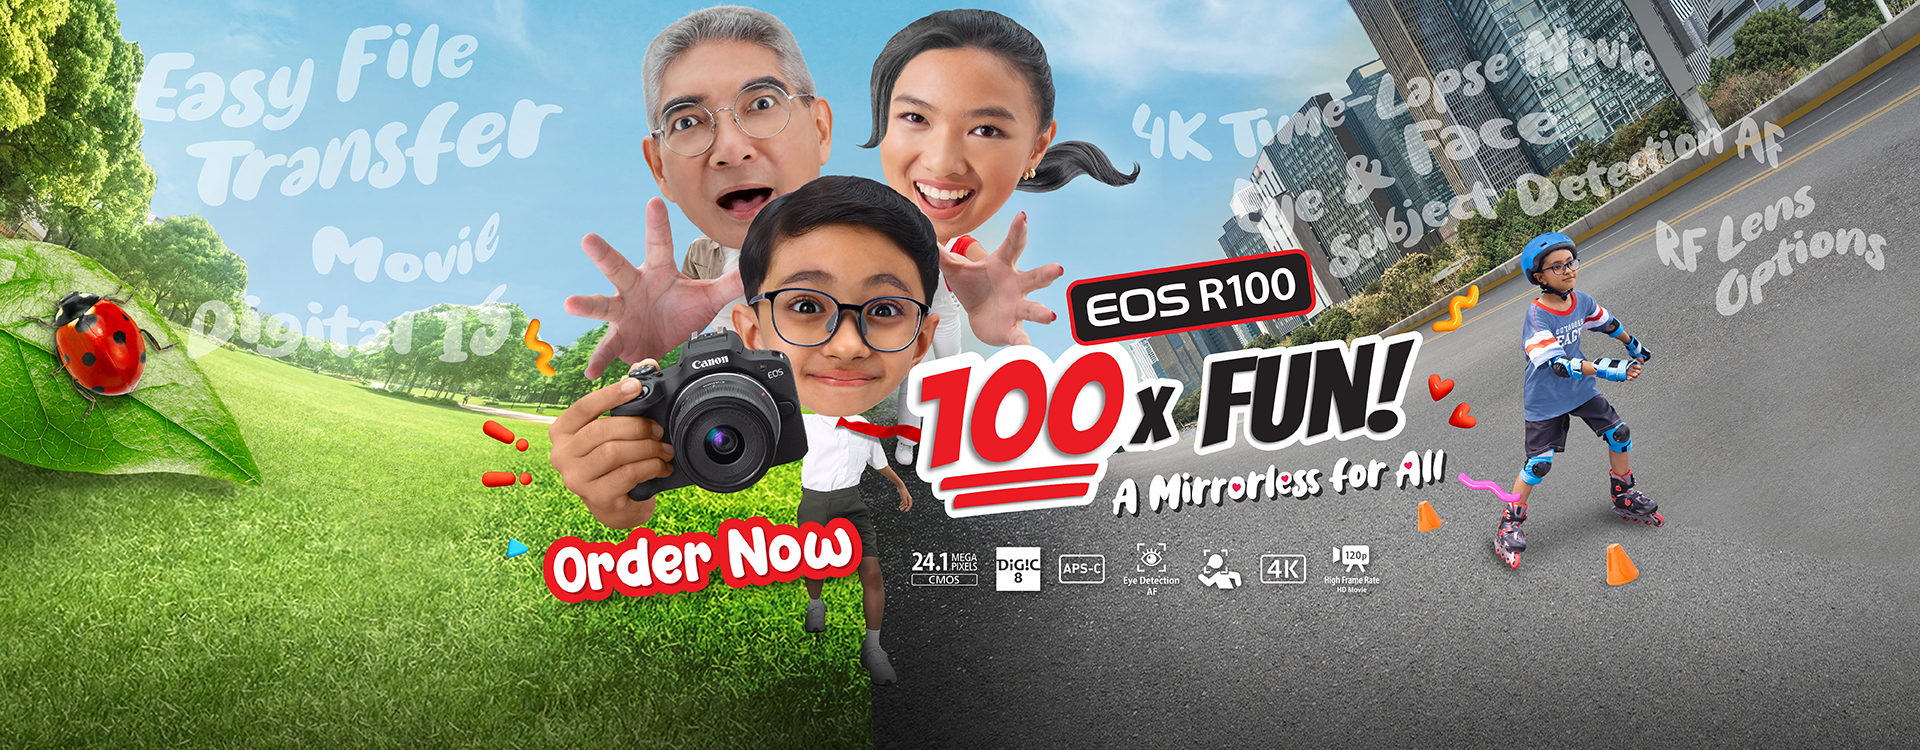 EOS R100 - 100 X FUN A Mirrorless for All